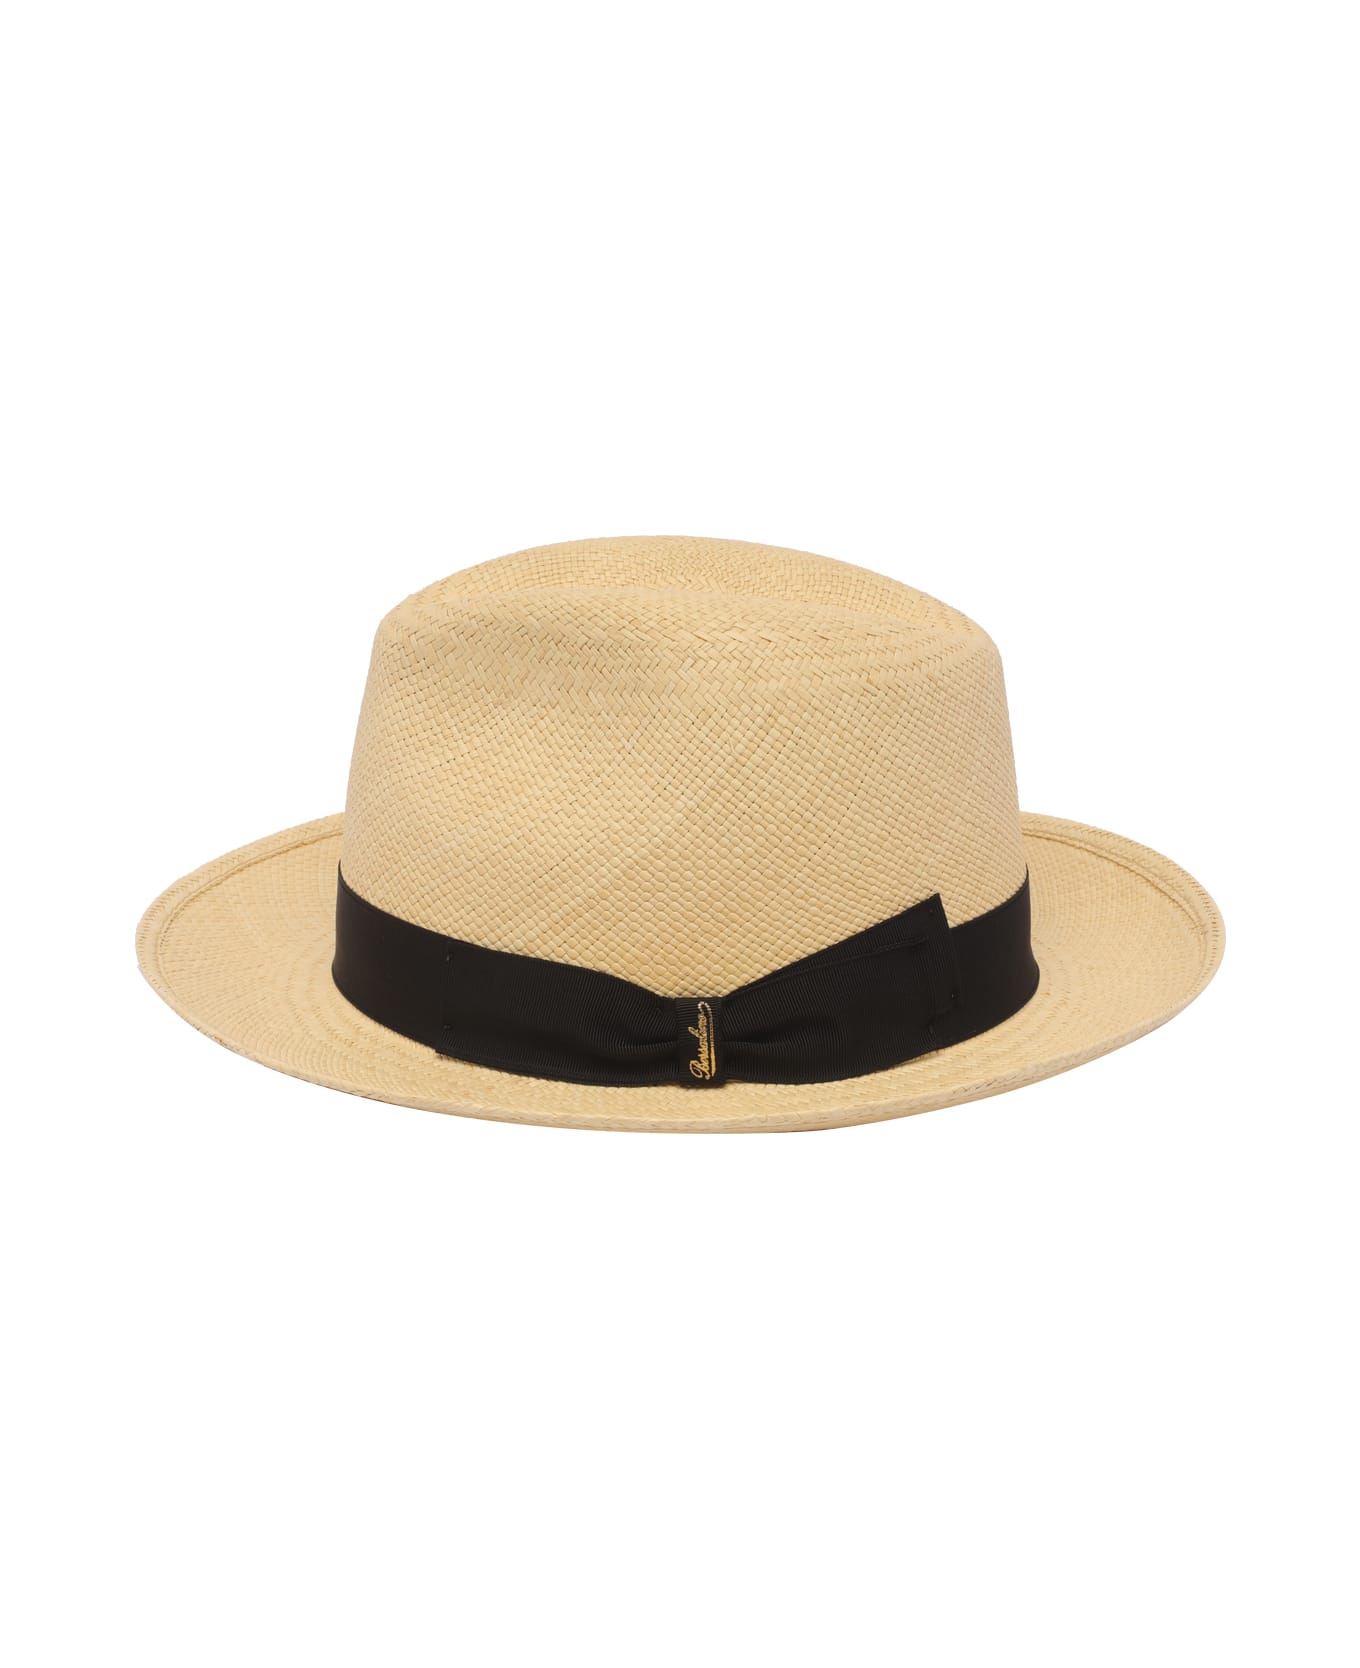 Borsalino Quito Panama Bucket Hat - Natural 帽子